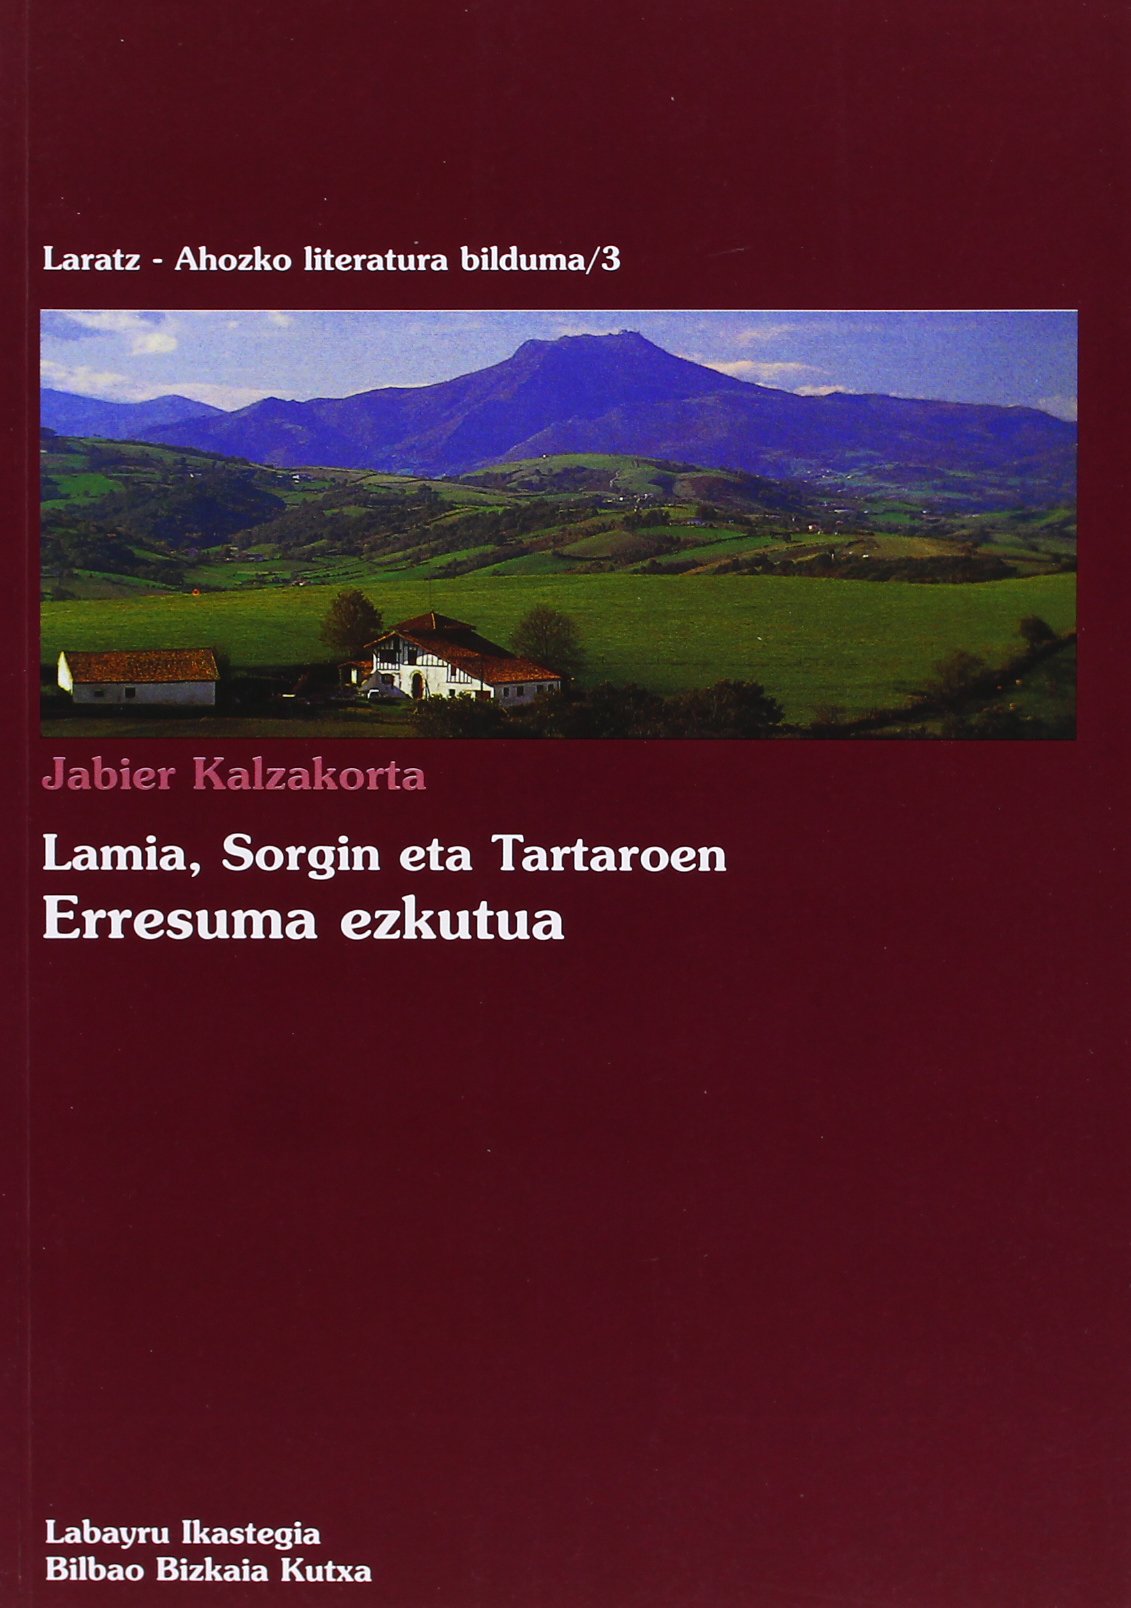 Imagen de portada del libro Lamia, sorgin eta tartaroen, erresuma ezkutua